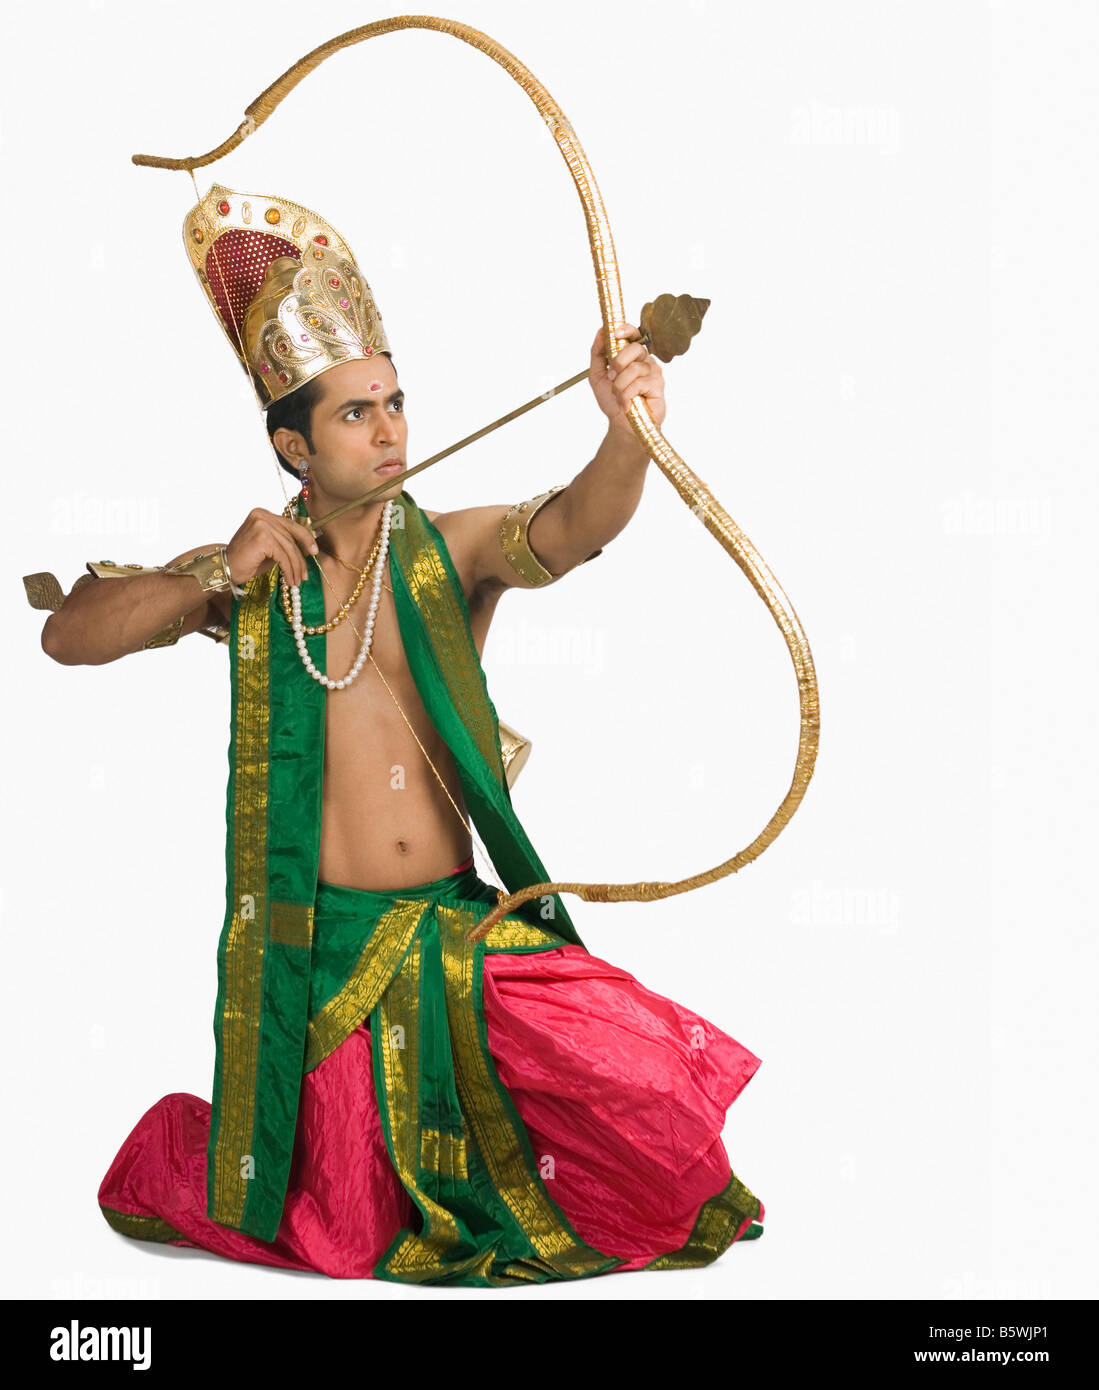 Jeune homme dans un caractère d'Arjuna et tenant un arc et une flèche Banque D'Images